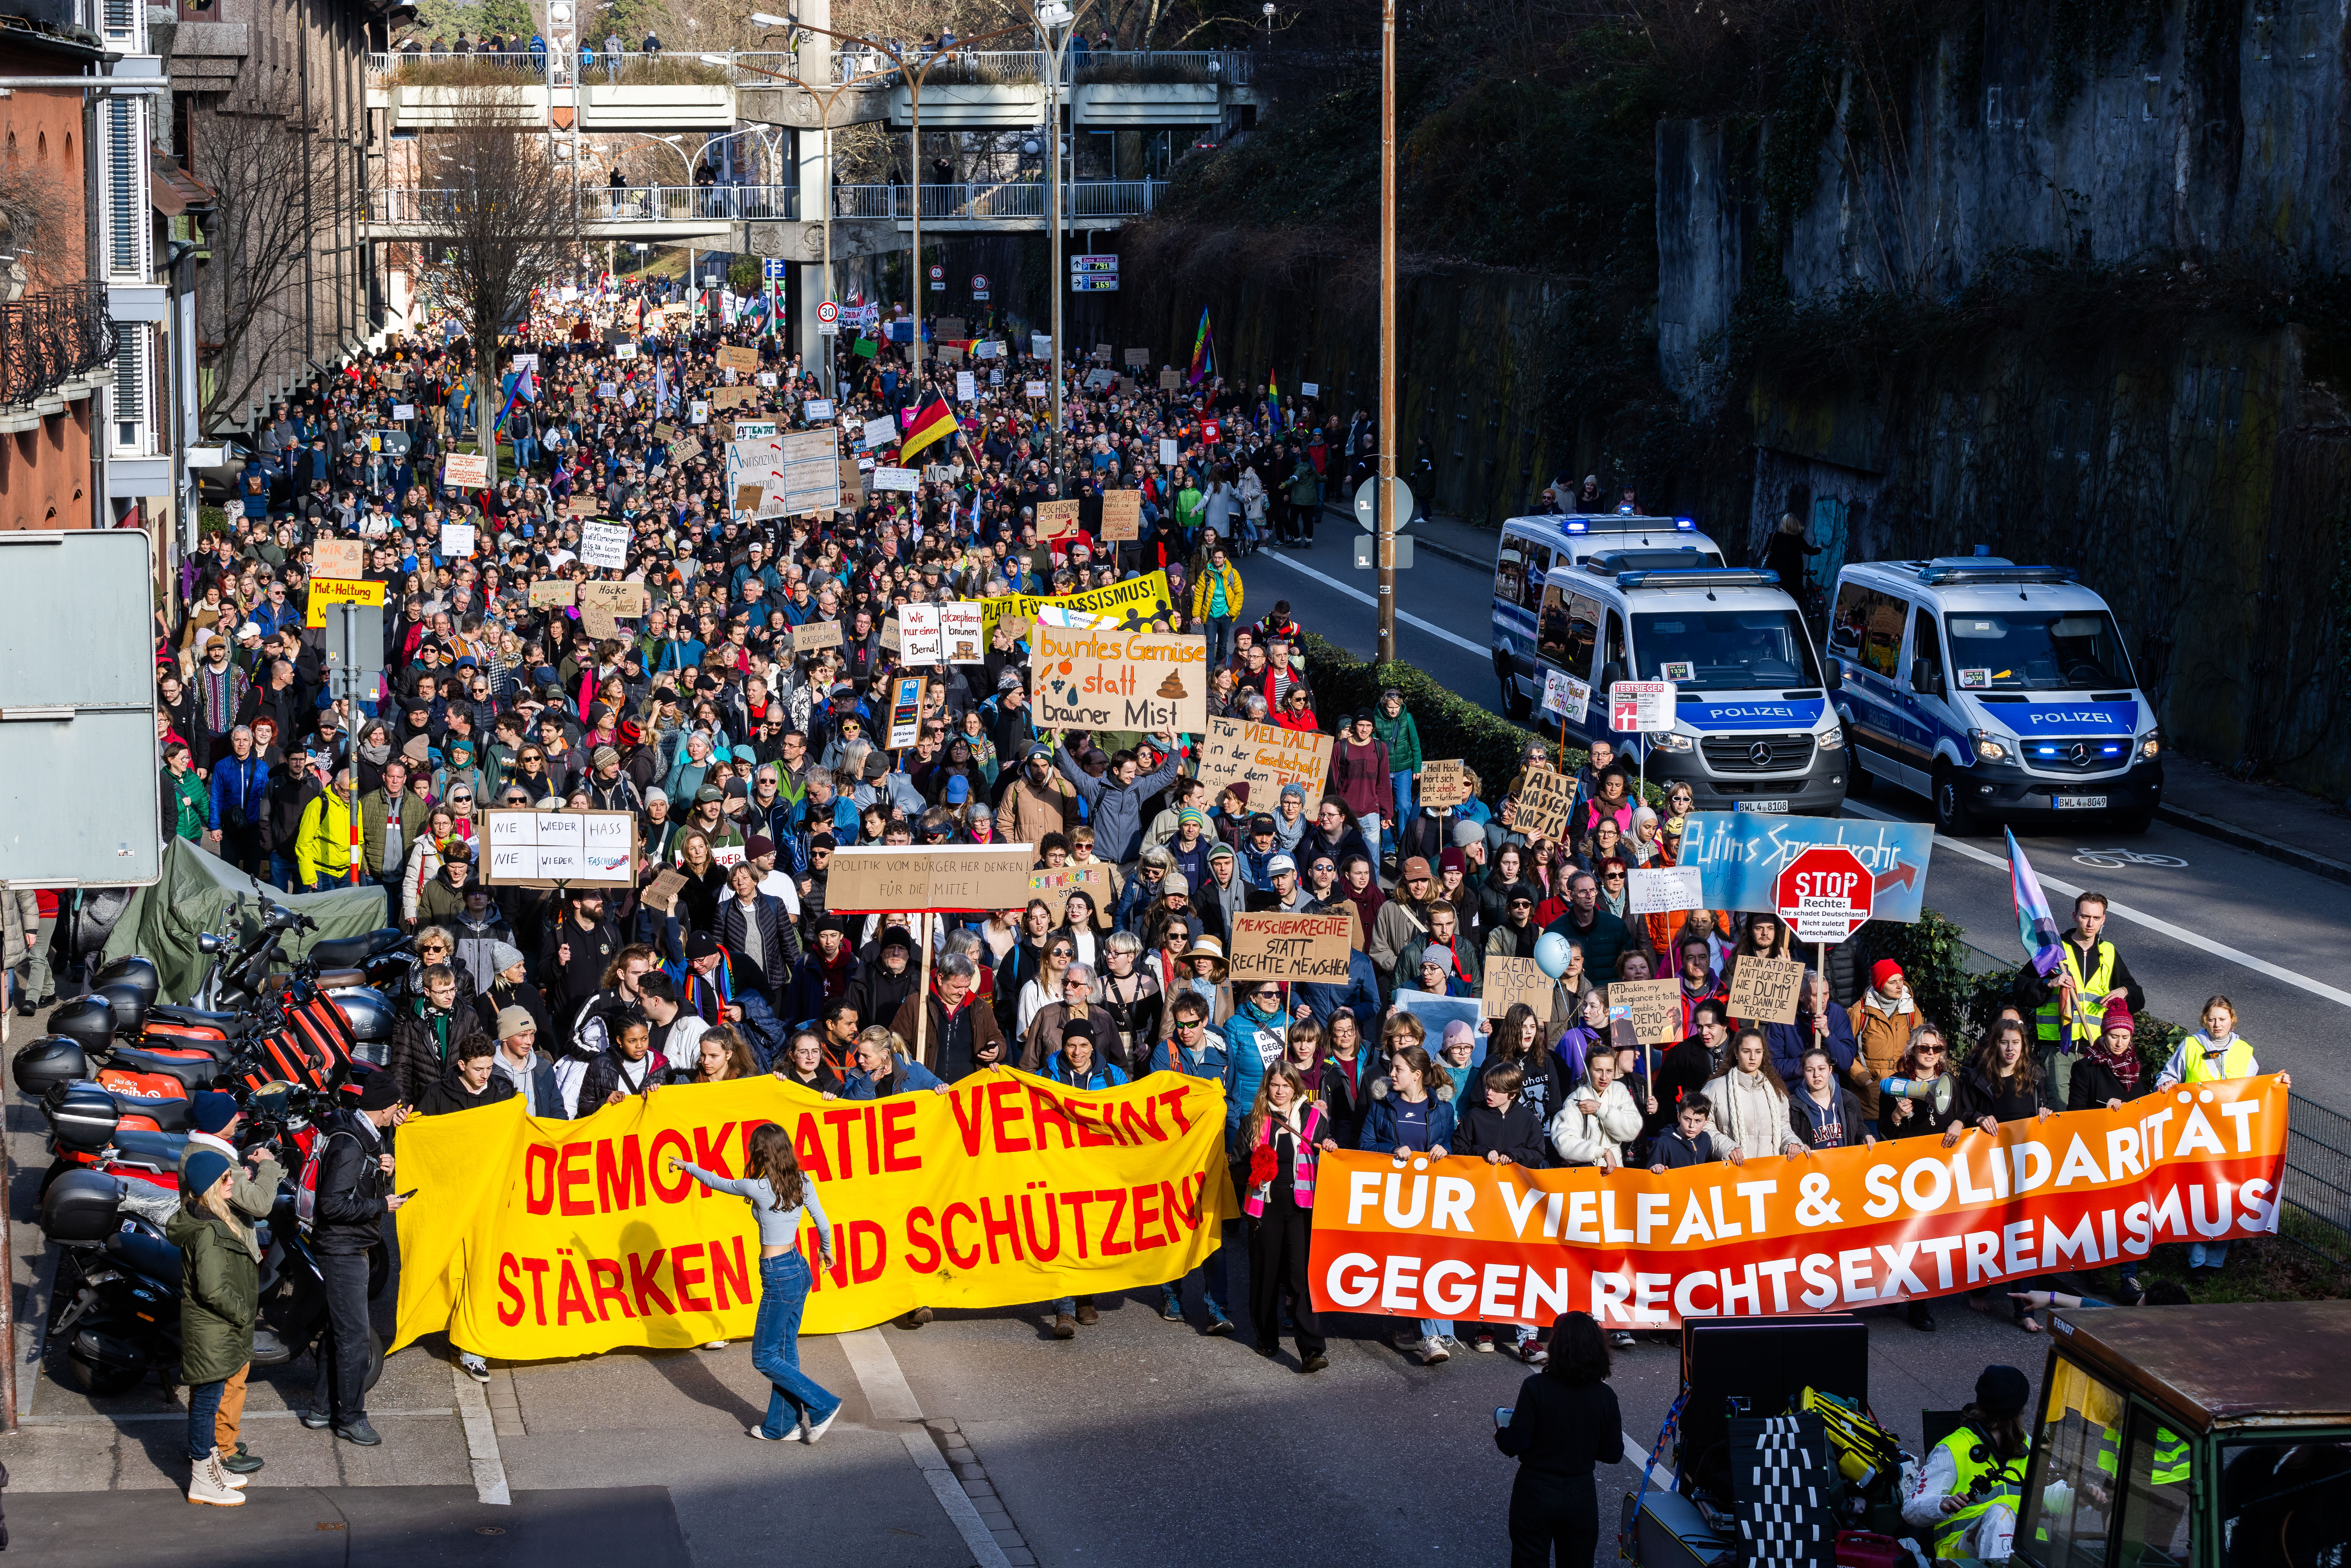 Viele Menschen gehen während einer Demonstration durch Freiburg und demonstrieren gegen rechts während sie Banner mit Aufschriften wie "Für Vielfalt & Solidarität gegen Rechtsextremismus", "# Demokratie vereint stärken und schützen!" oder "Menschenrechte statt rechte Menschen" tragen. Mit der Demonstration wollen die Teilnehmer ein Zeichen des Widerstands gegen rechtsextreme Umtriebe setzen. 